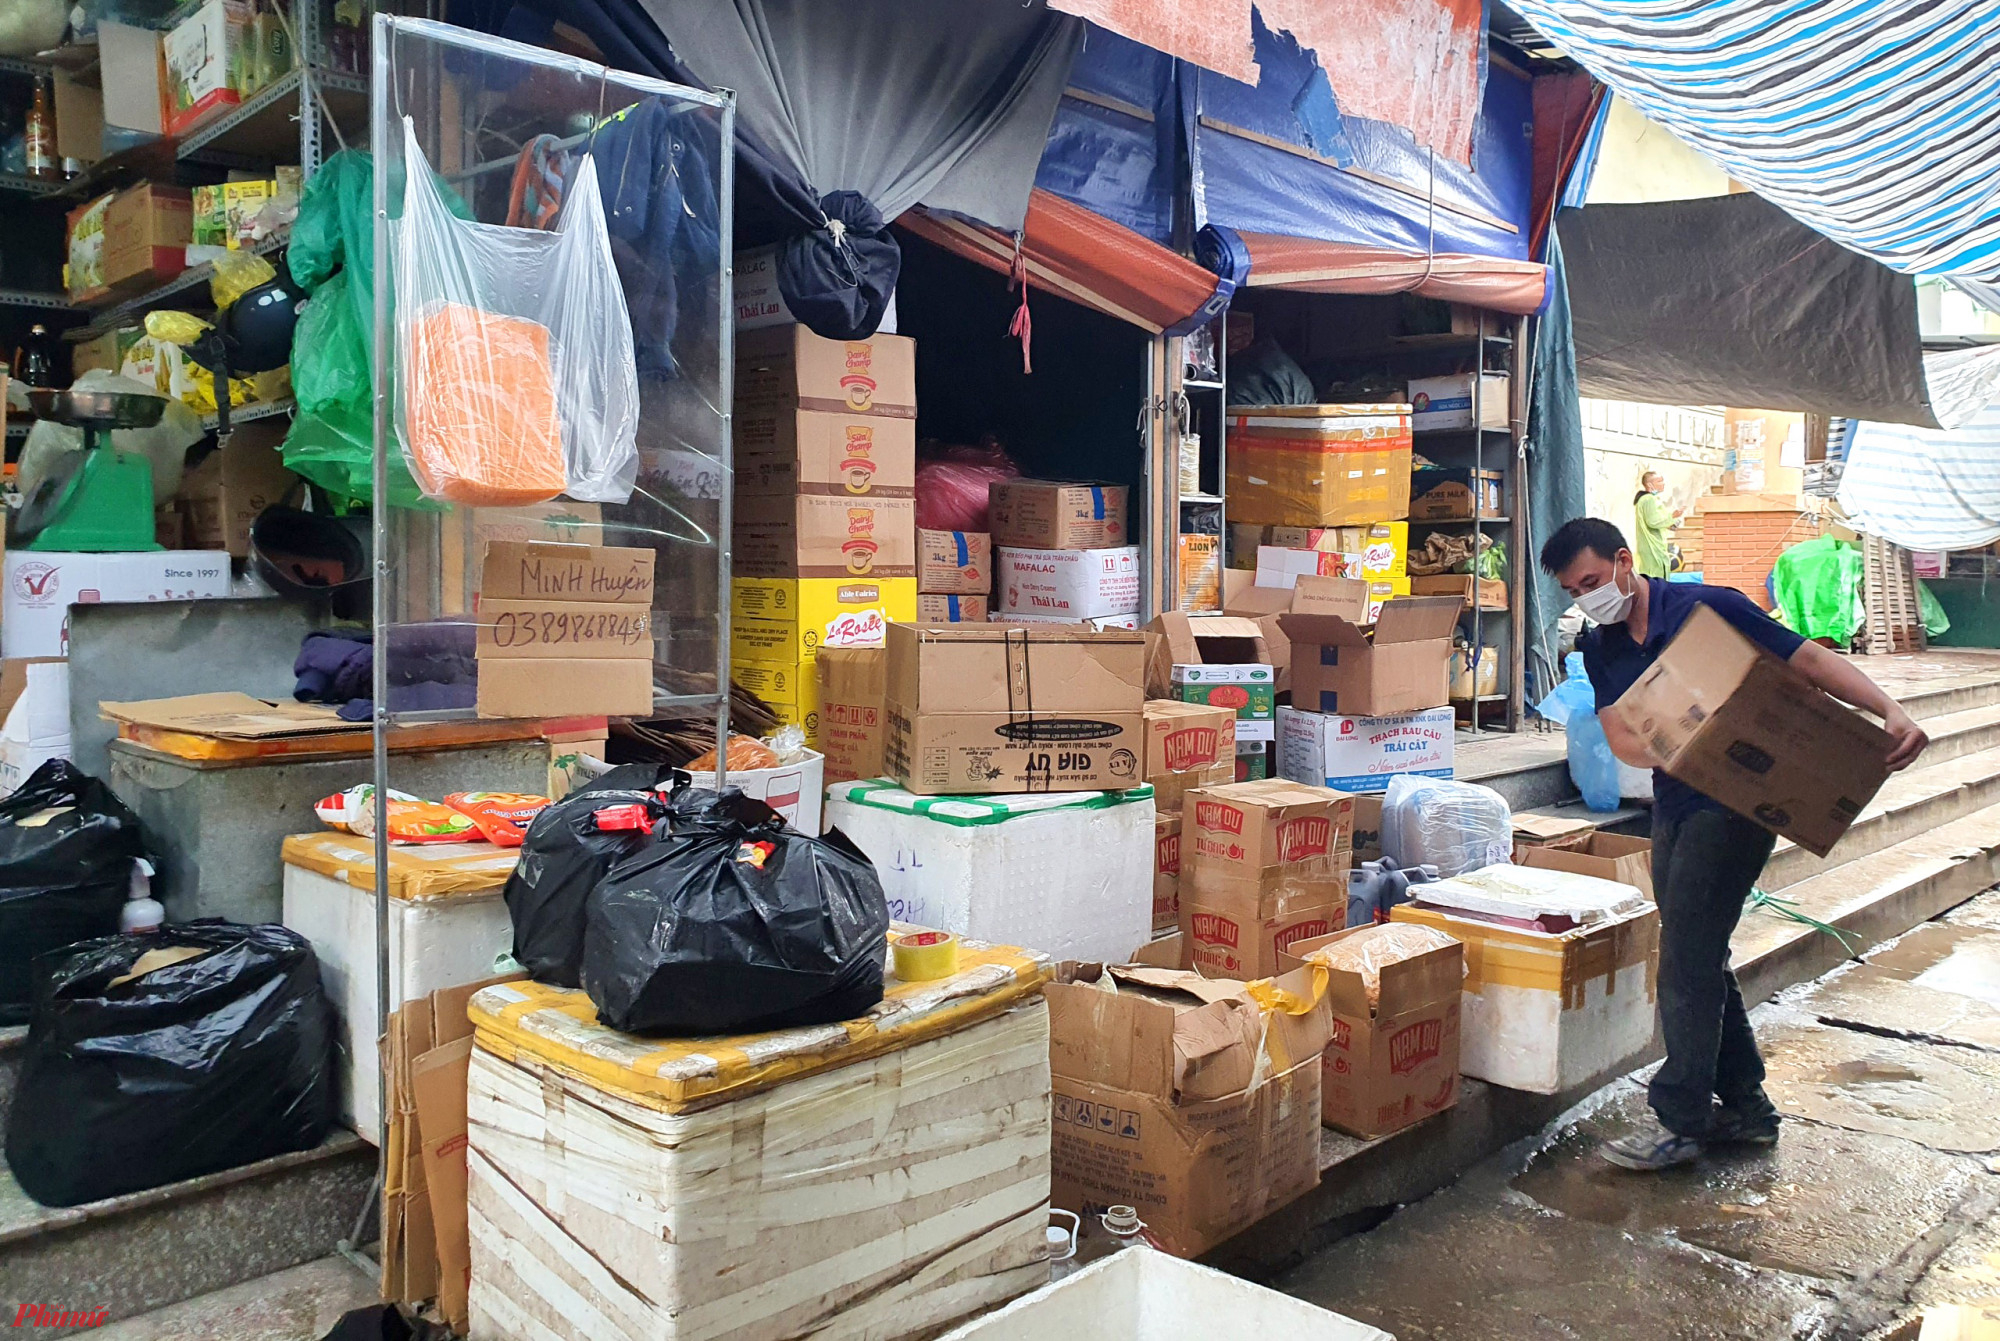 Ông Nguyễn Hữu Đắc - Trưởng Ban quản lý chợ Vinh cho biết, toàn chợ có 3.200 tiểu thương, song do dịch bệnh kéo dài, buôn bán khó khăn nên hiện chỉ có 60% tiểu thương hoạt động tại chợ. 